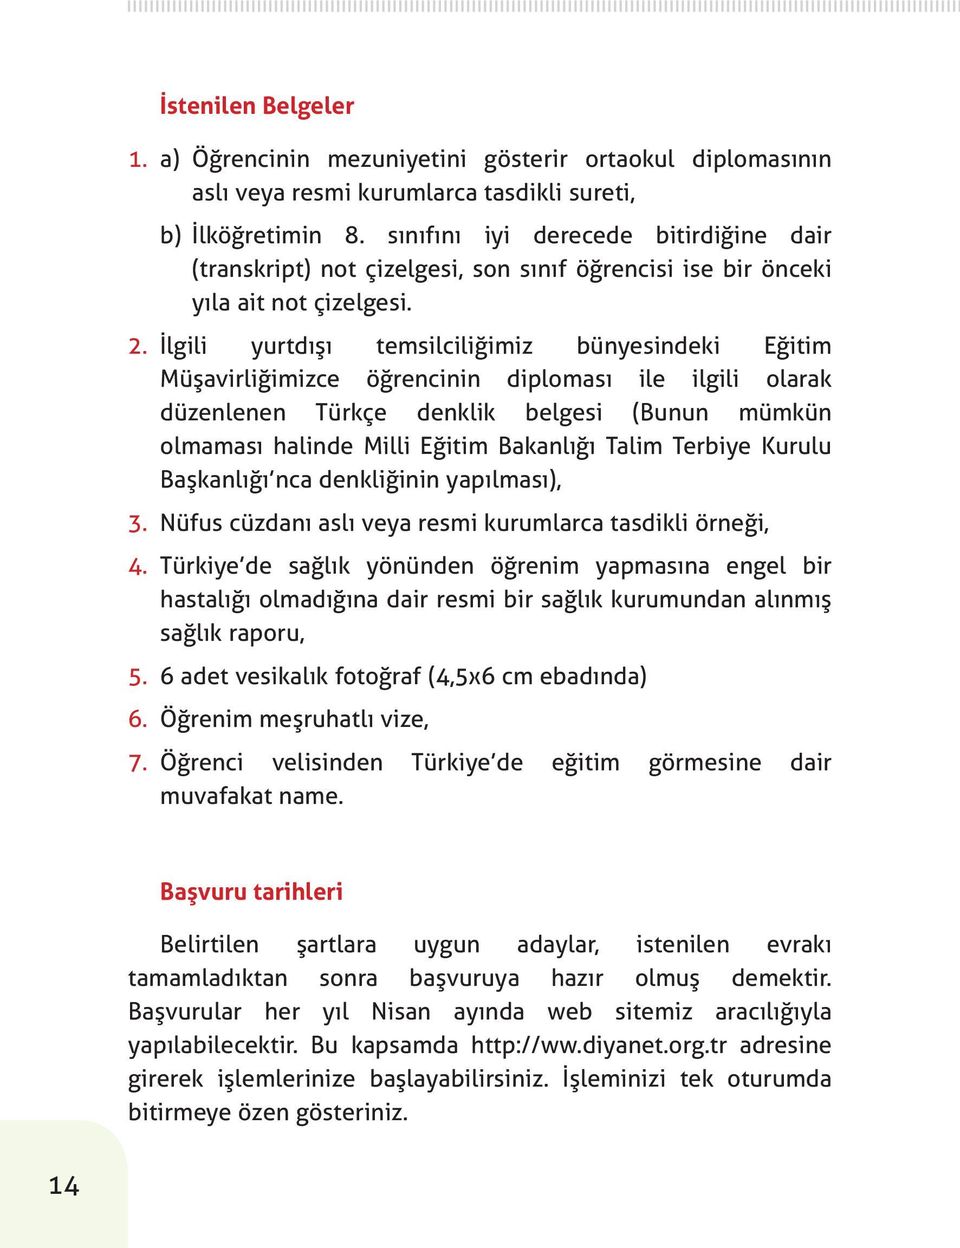 İlgili yurtdışı temsilciliğimiz bünyesindeki Eğitim Müşavirliğimizce öğrencinin diploması ile ilgili olarak düzenlenen Türkçe denklik belgesi (Bunun mümkün olmaması halinde Milli Eğitim Bakanlığı